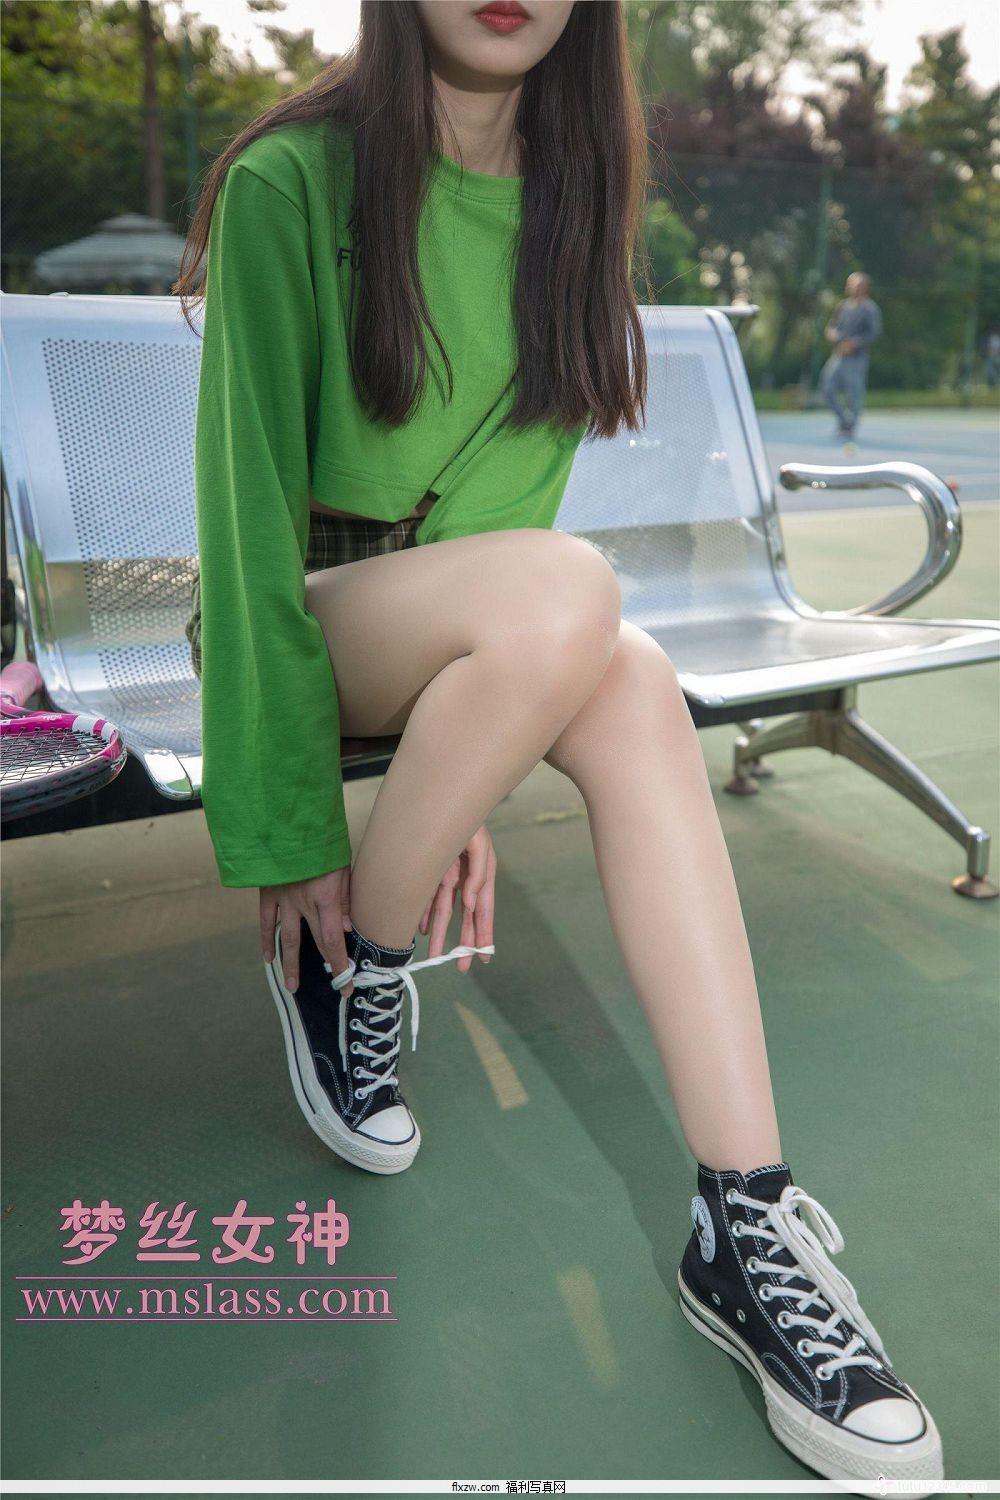 梦丝女神MSLASS - 香萱 网球少女(17)